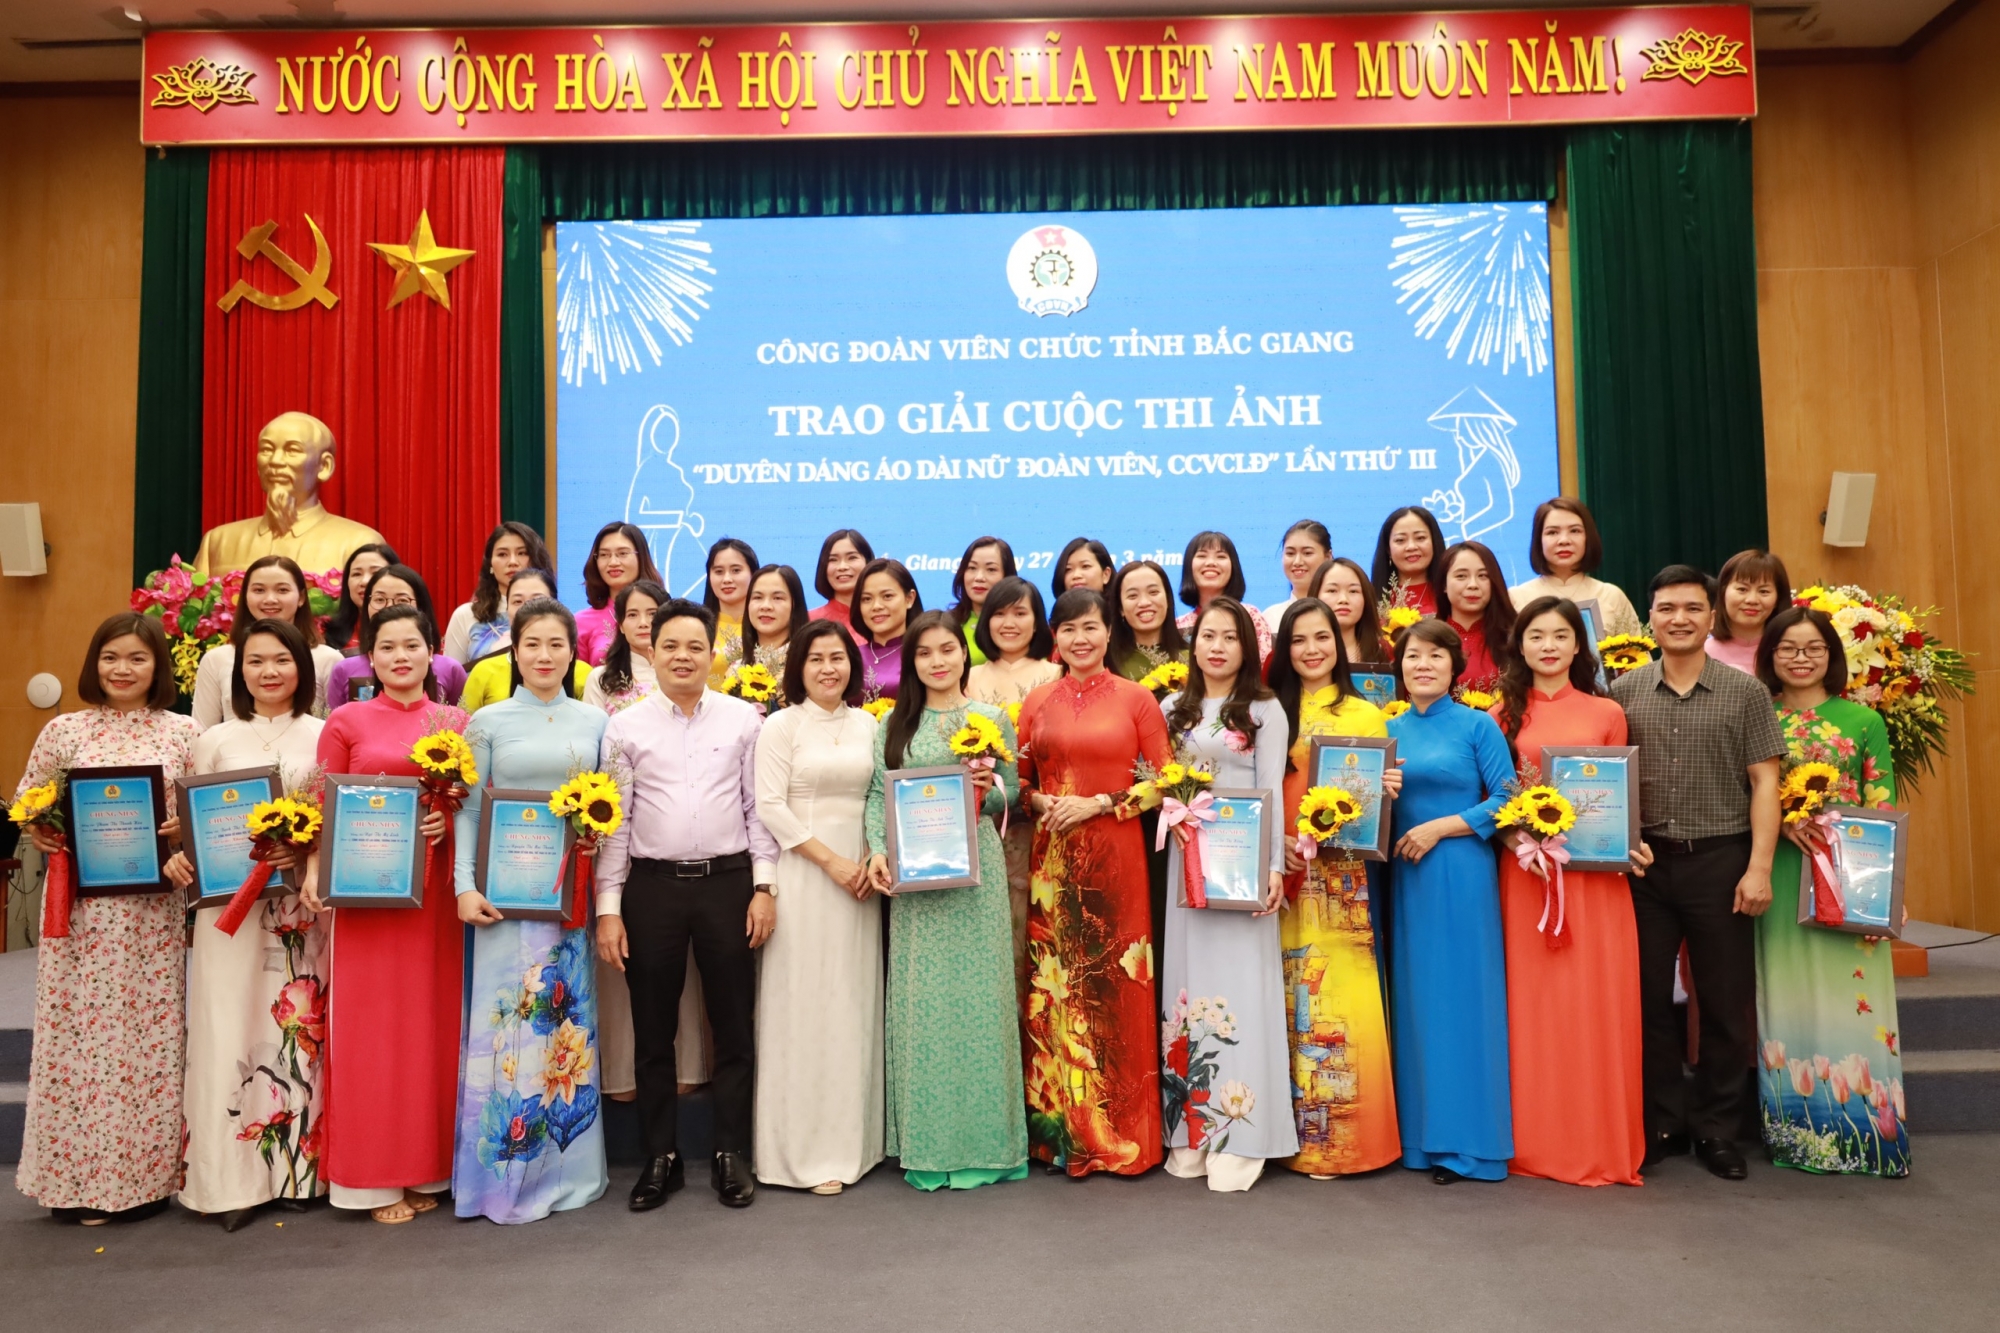 Công đoàn Viên chức tỉnh Bắc Giang: Trao giải Cuộc thi ảnh “Duyên dáng áo dài nữ đoàn viên, công chức, viên chức, lao động”